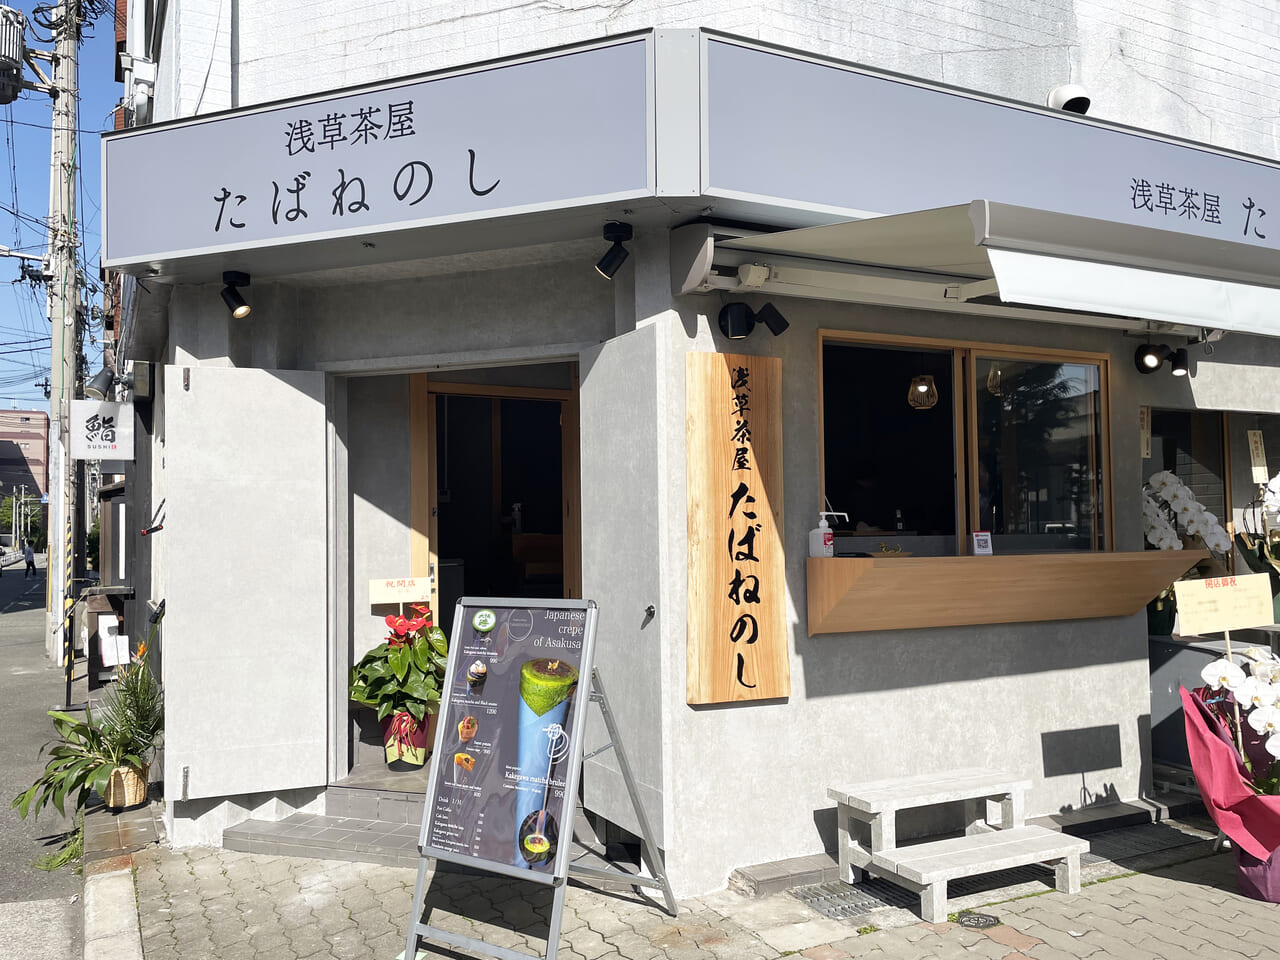 港区の浅草茶屋たばねのし大阪港店